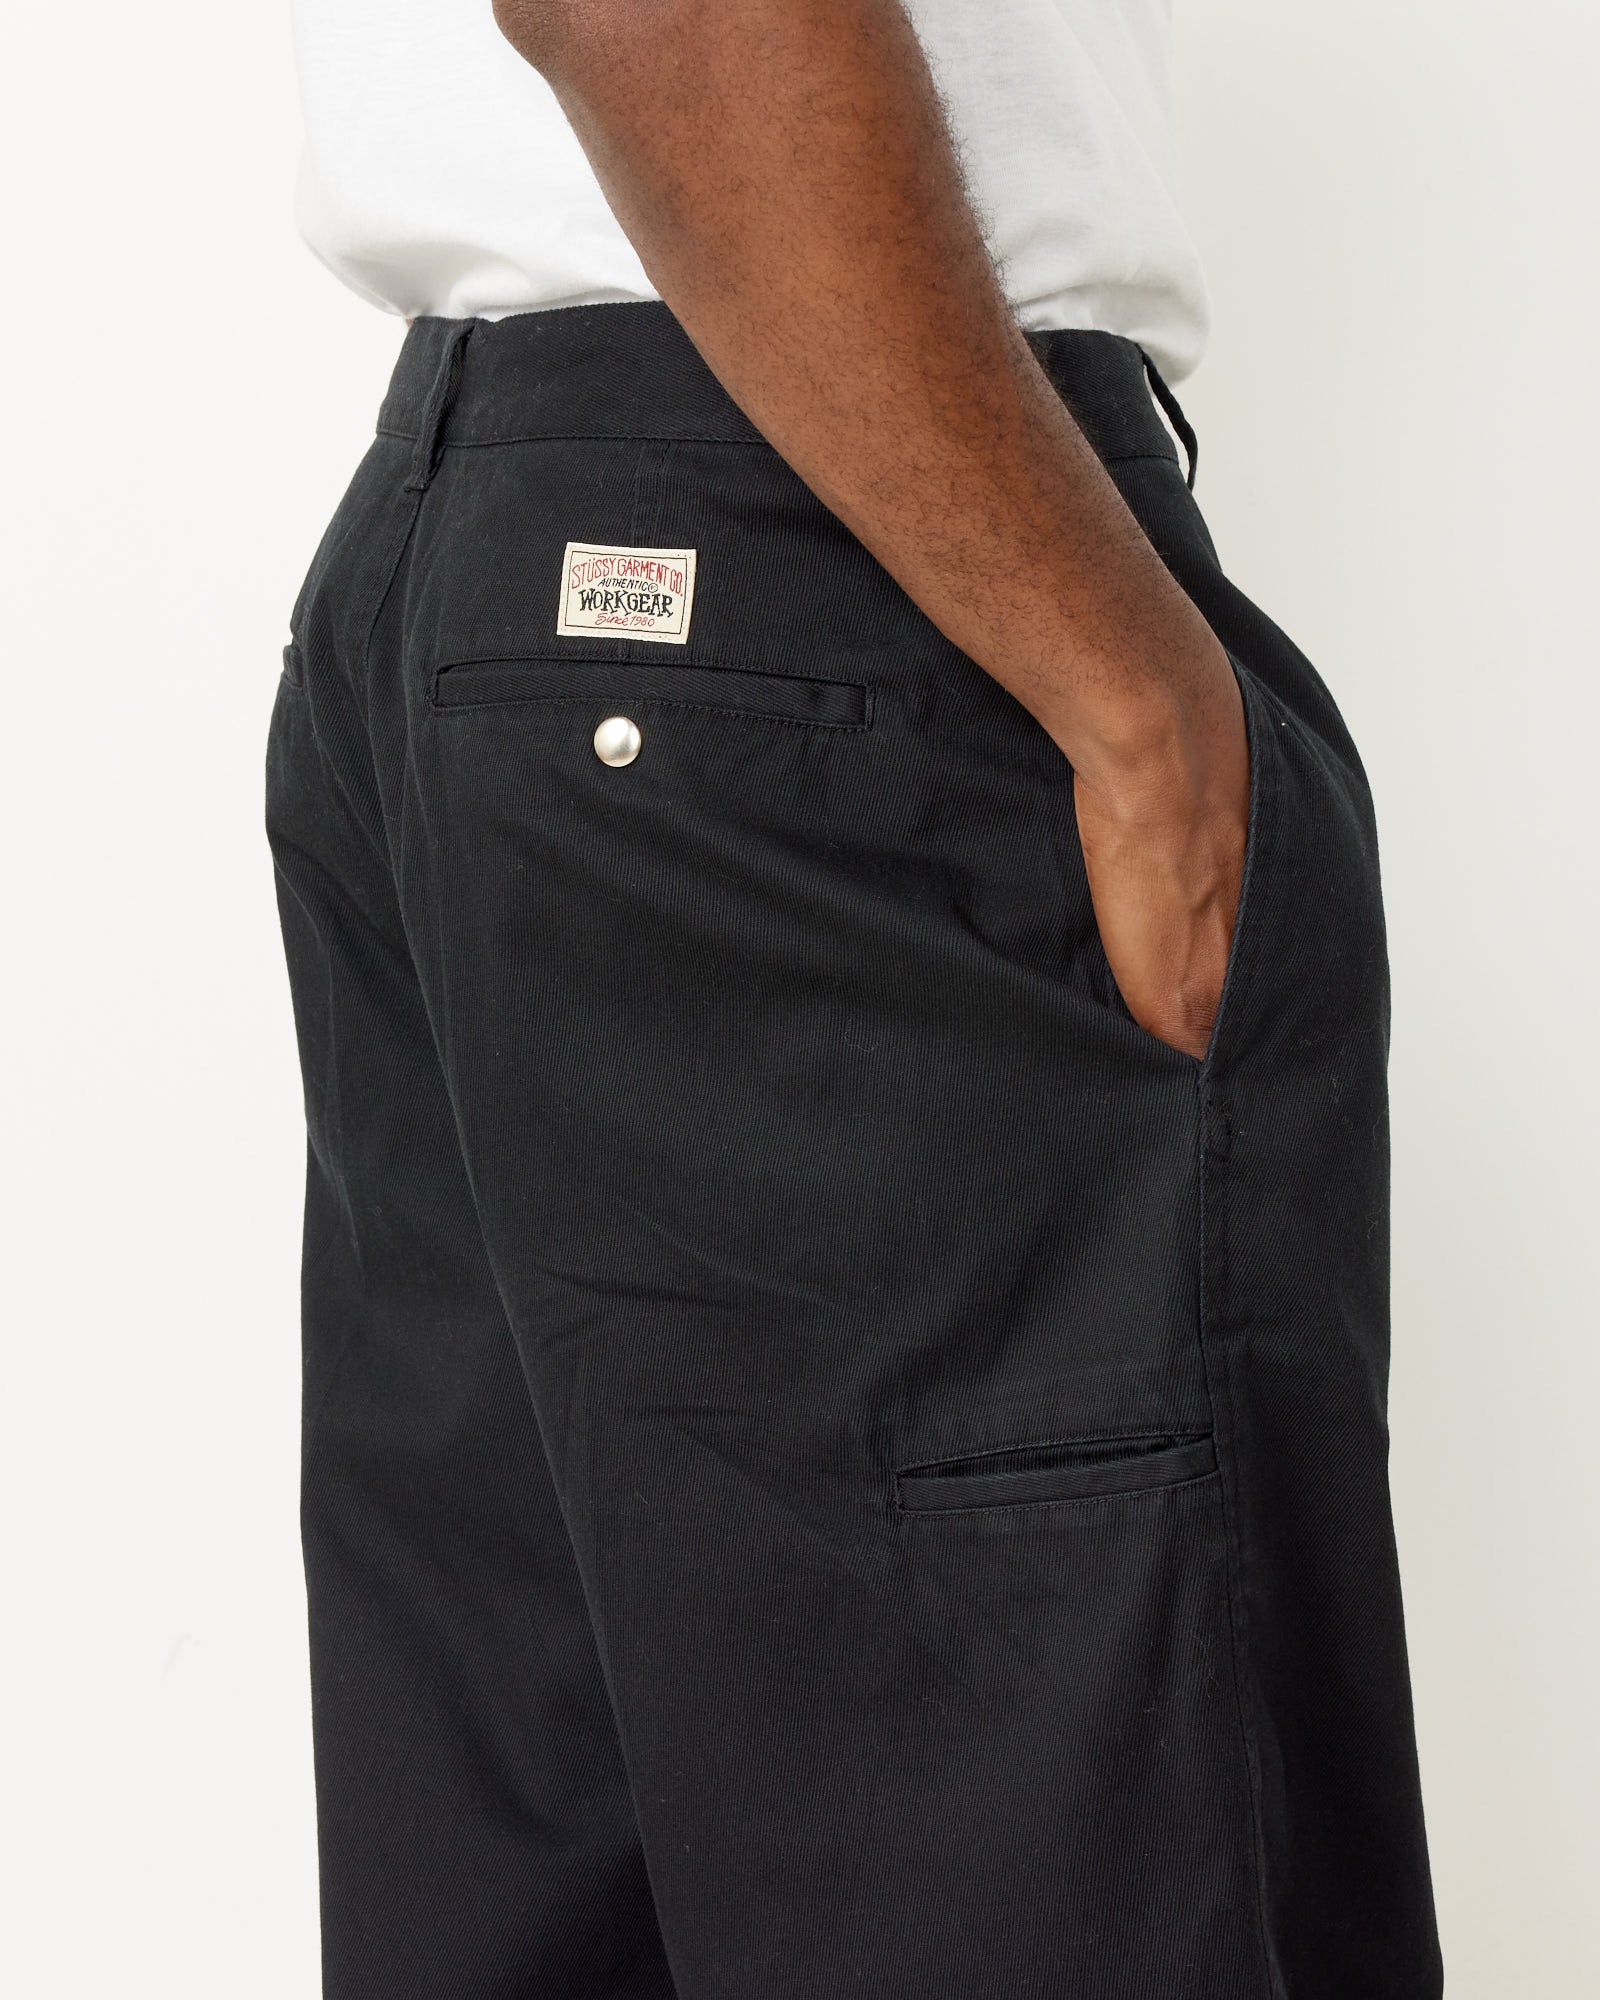 Workgear Trouser in Black